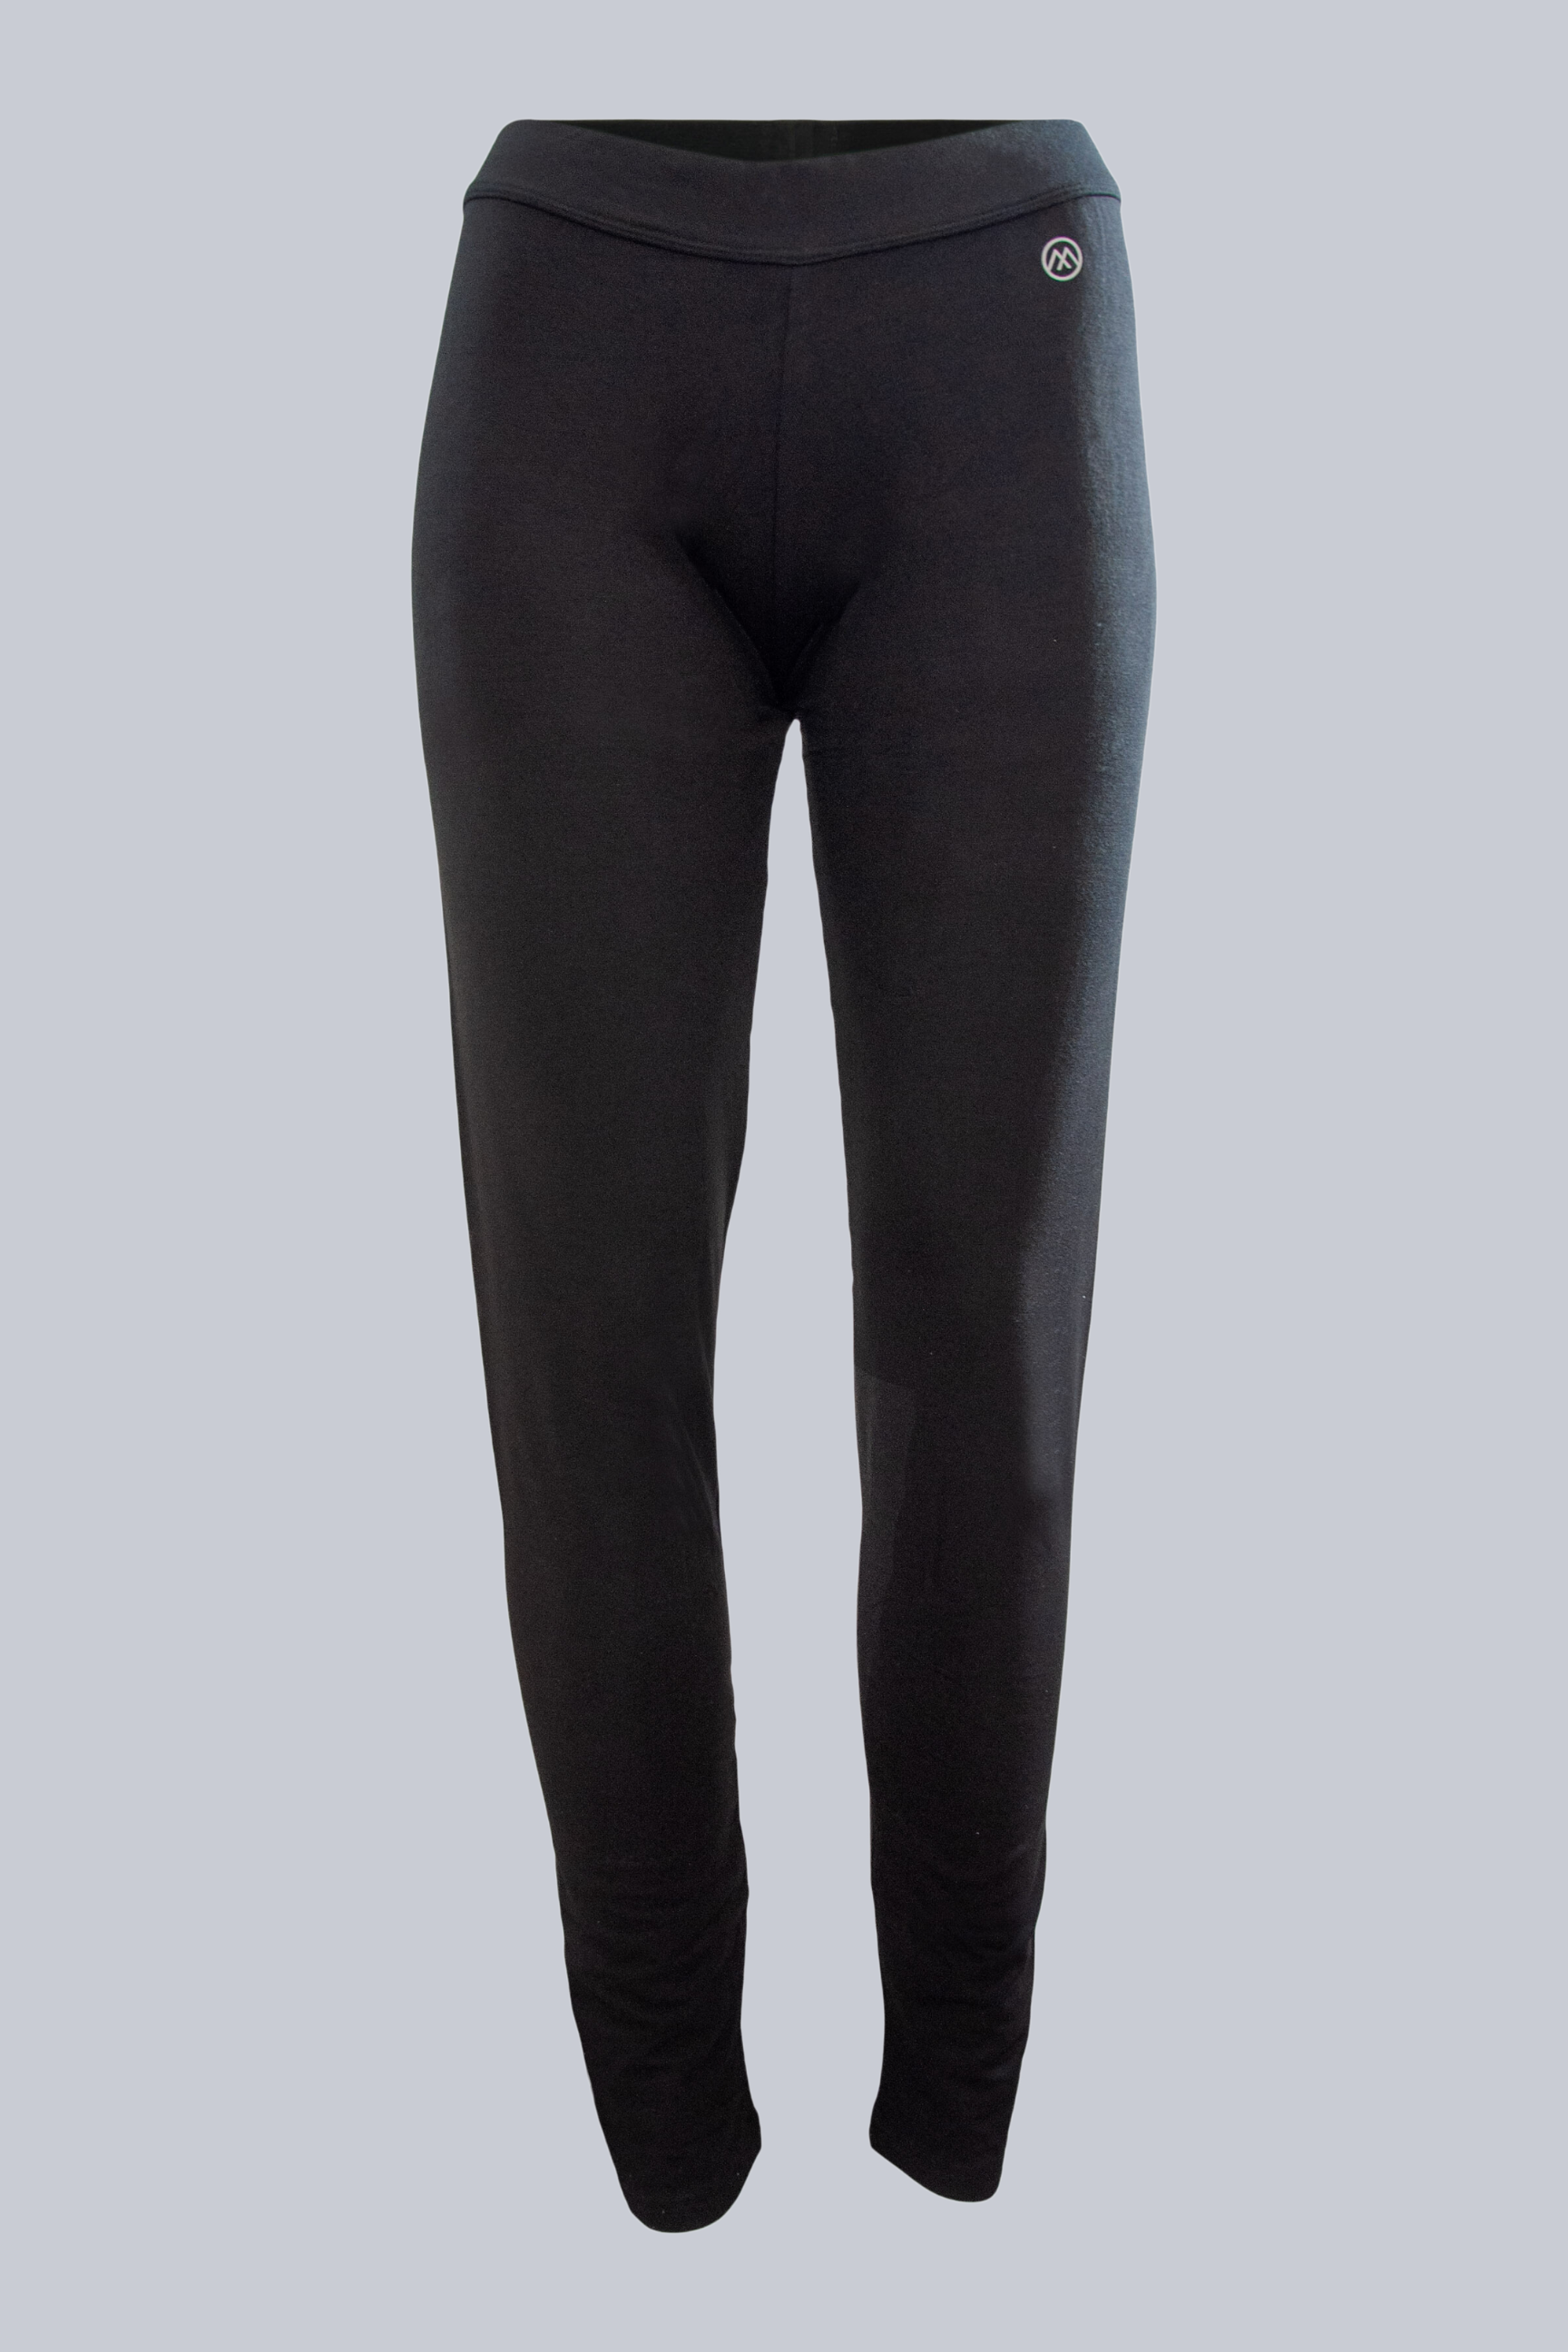 NZSALE  BR Apparel Womens Merino Wool Long Janes Thermal Underwear Layer  Thermals Leggings Pants - Beige